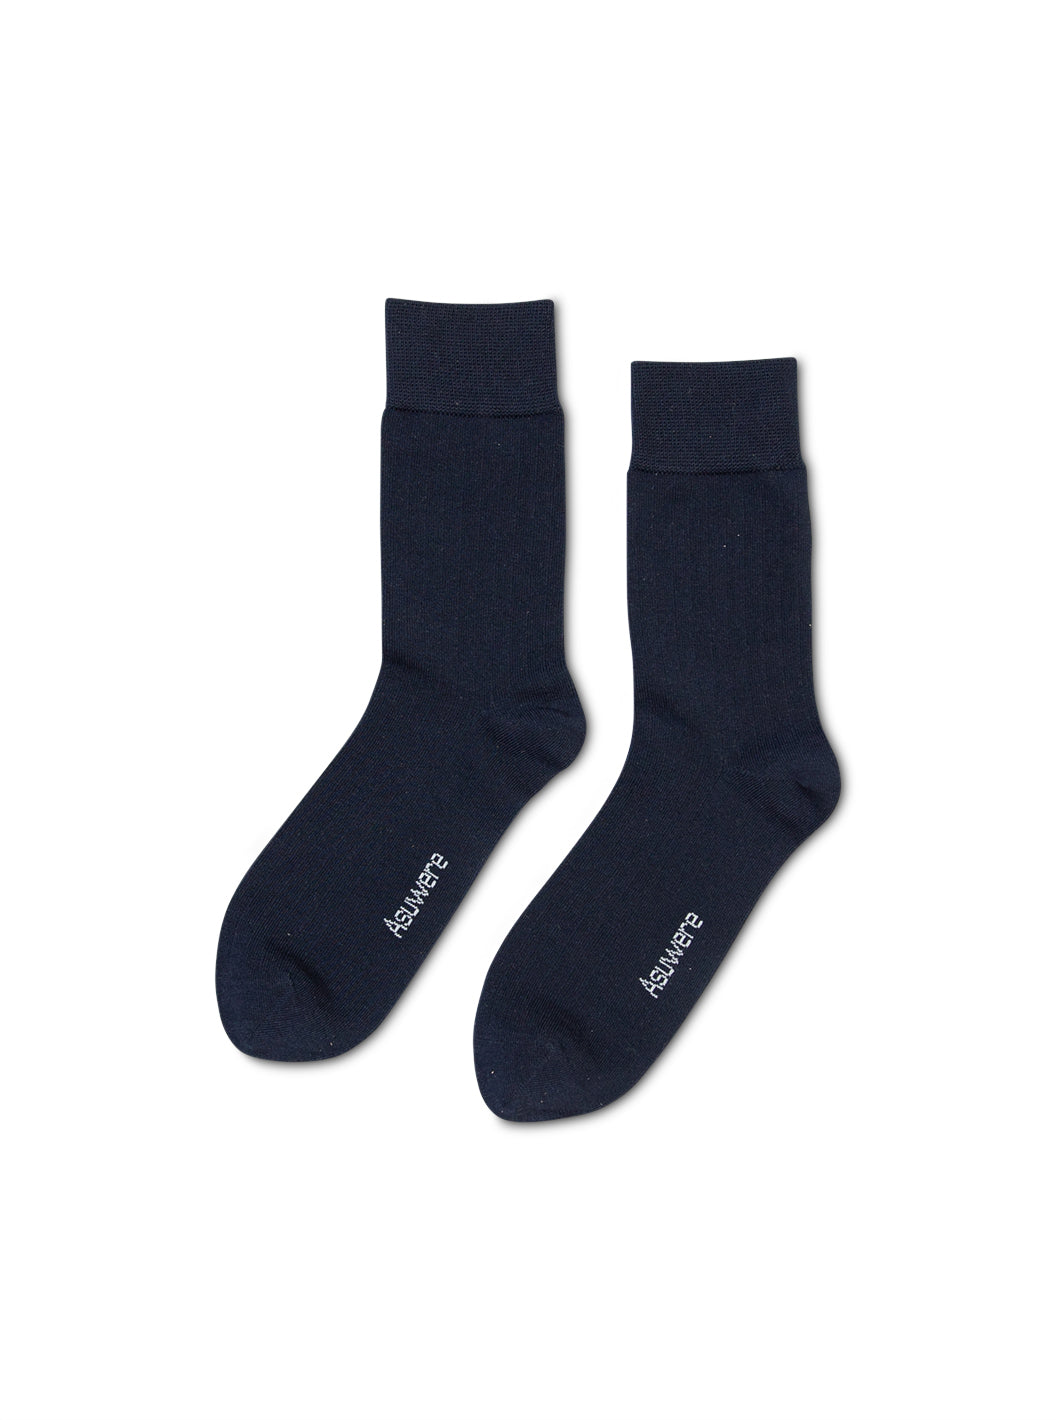 Staple Sock, Navy - Mens Socks NZ | Asuwere